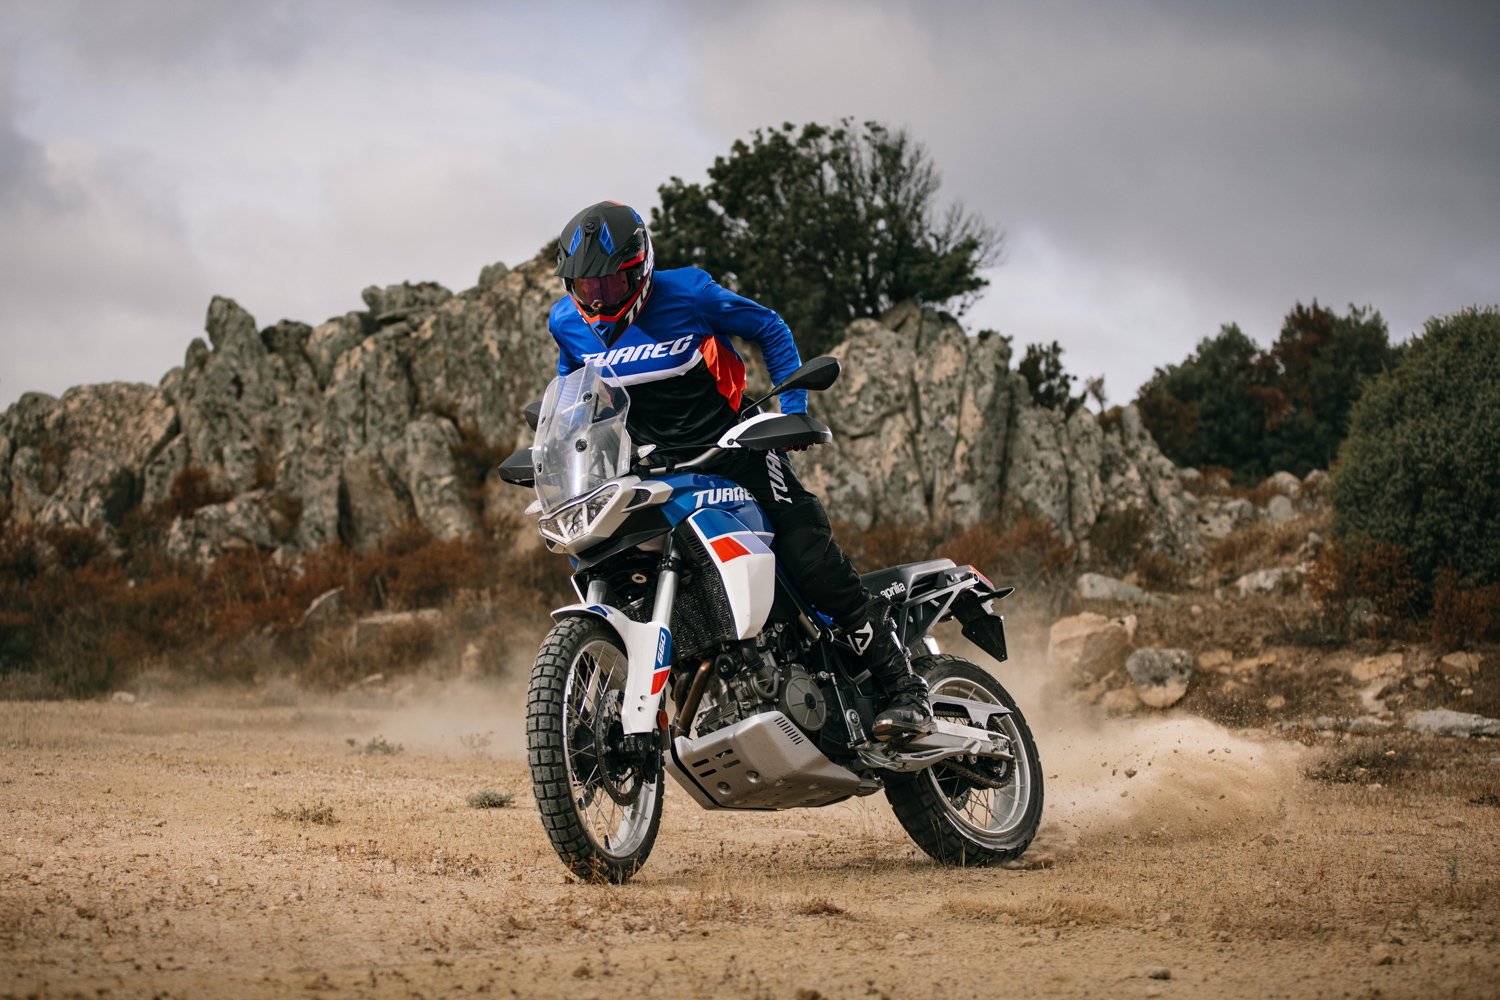 Aprilia Tuareg 660 è il nuovo modello della casa di Noale che riporta in voga moto e nome che ha fatto innamorare generazioni di motociclisti